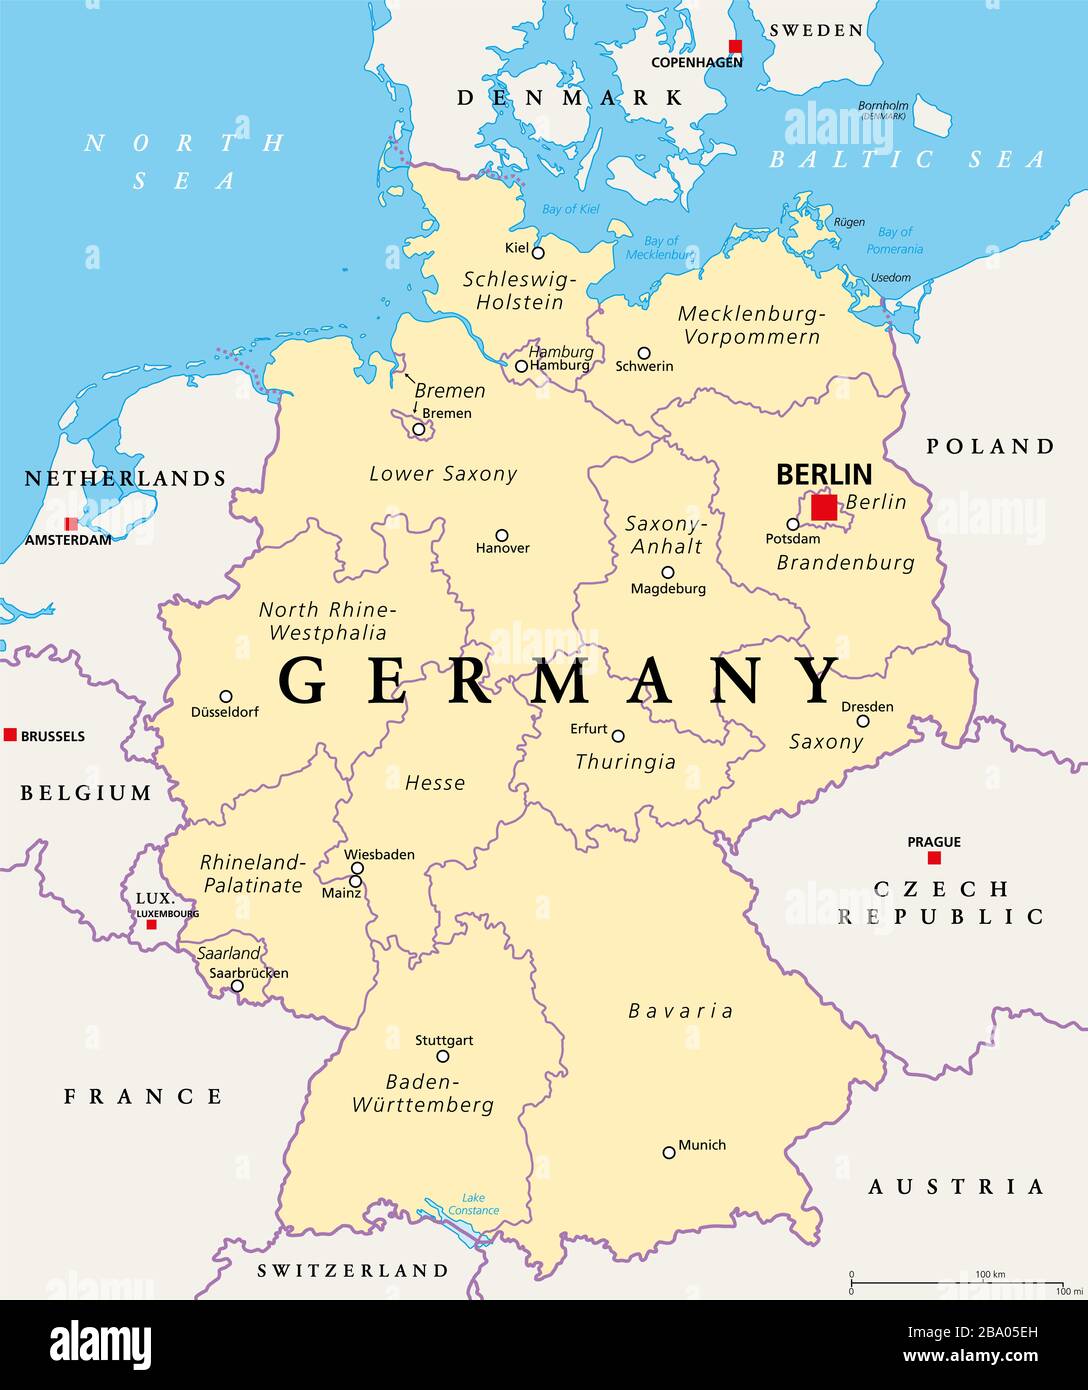 Deutschland, politische Karte. Staaten der Bundesrepublik Deutschland mit der Hauptstadt Berlin und 16 teils souveränen Staaten. Land in Europa. Stockfoto